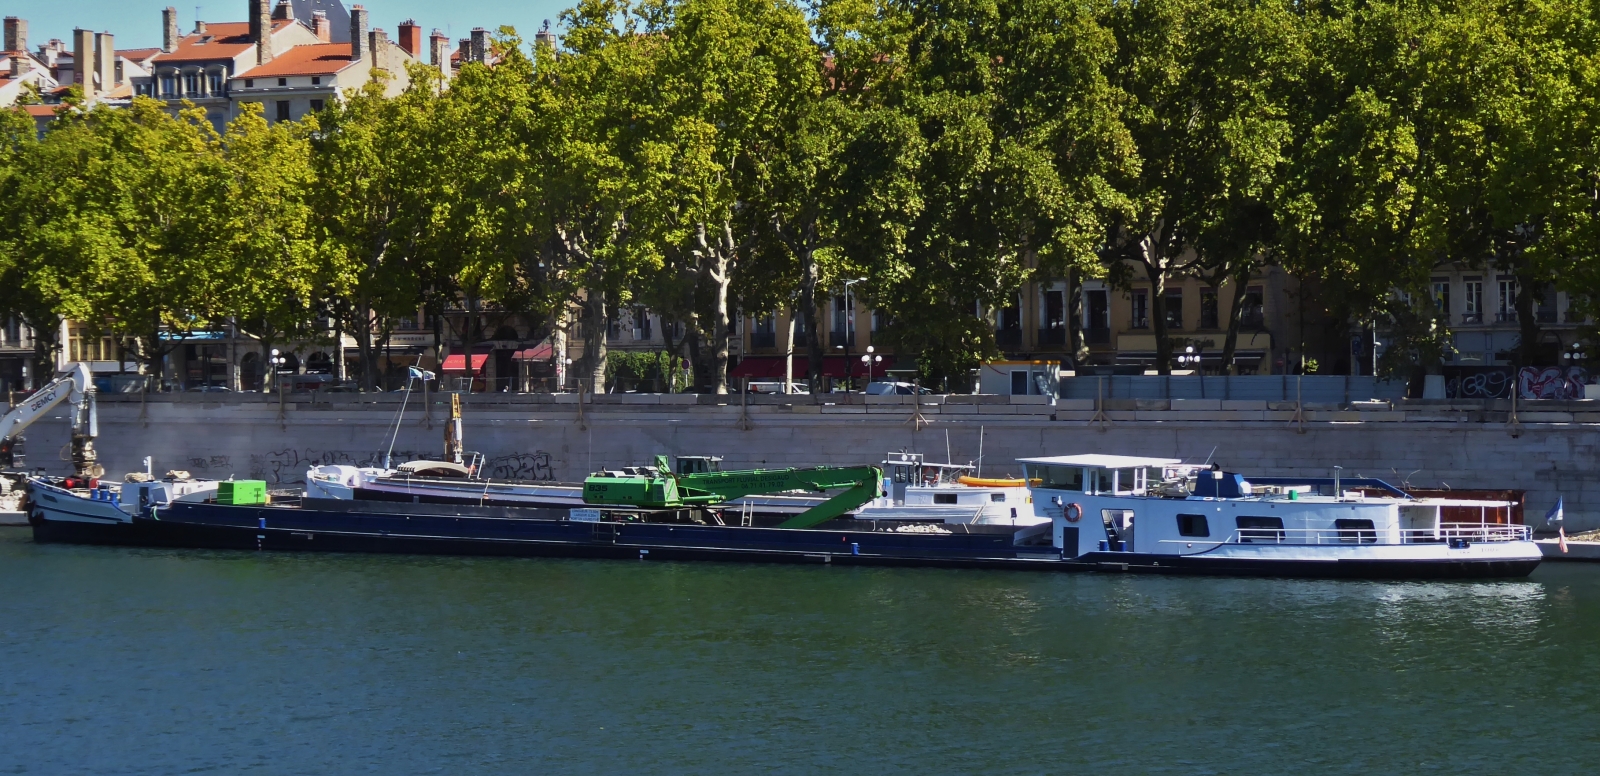 Baggerschiff mit unbekanntem Namen, liegt an einer Baustelle auf der Rhone in Lyon. 09.2022 